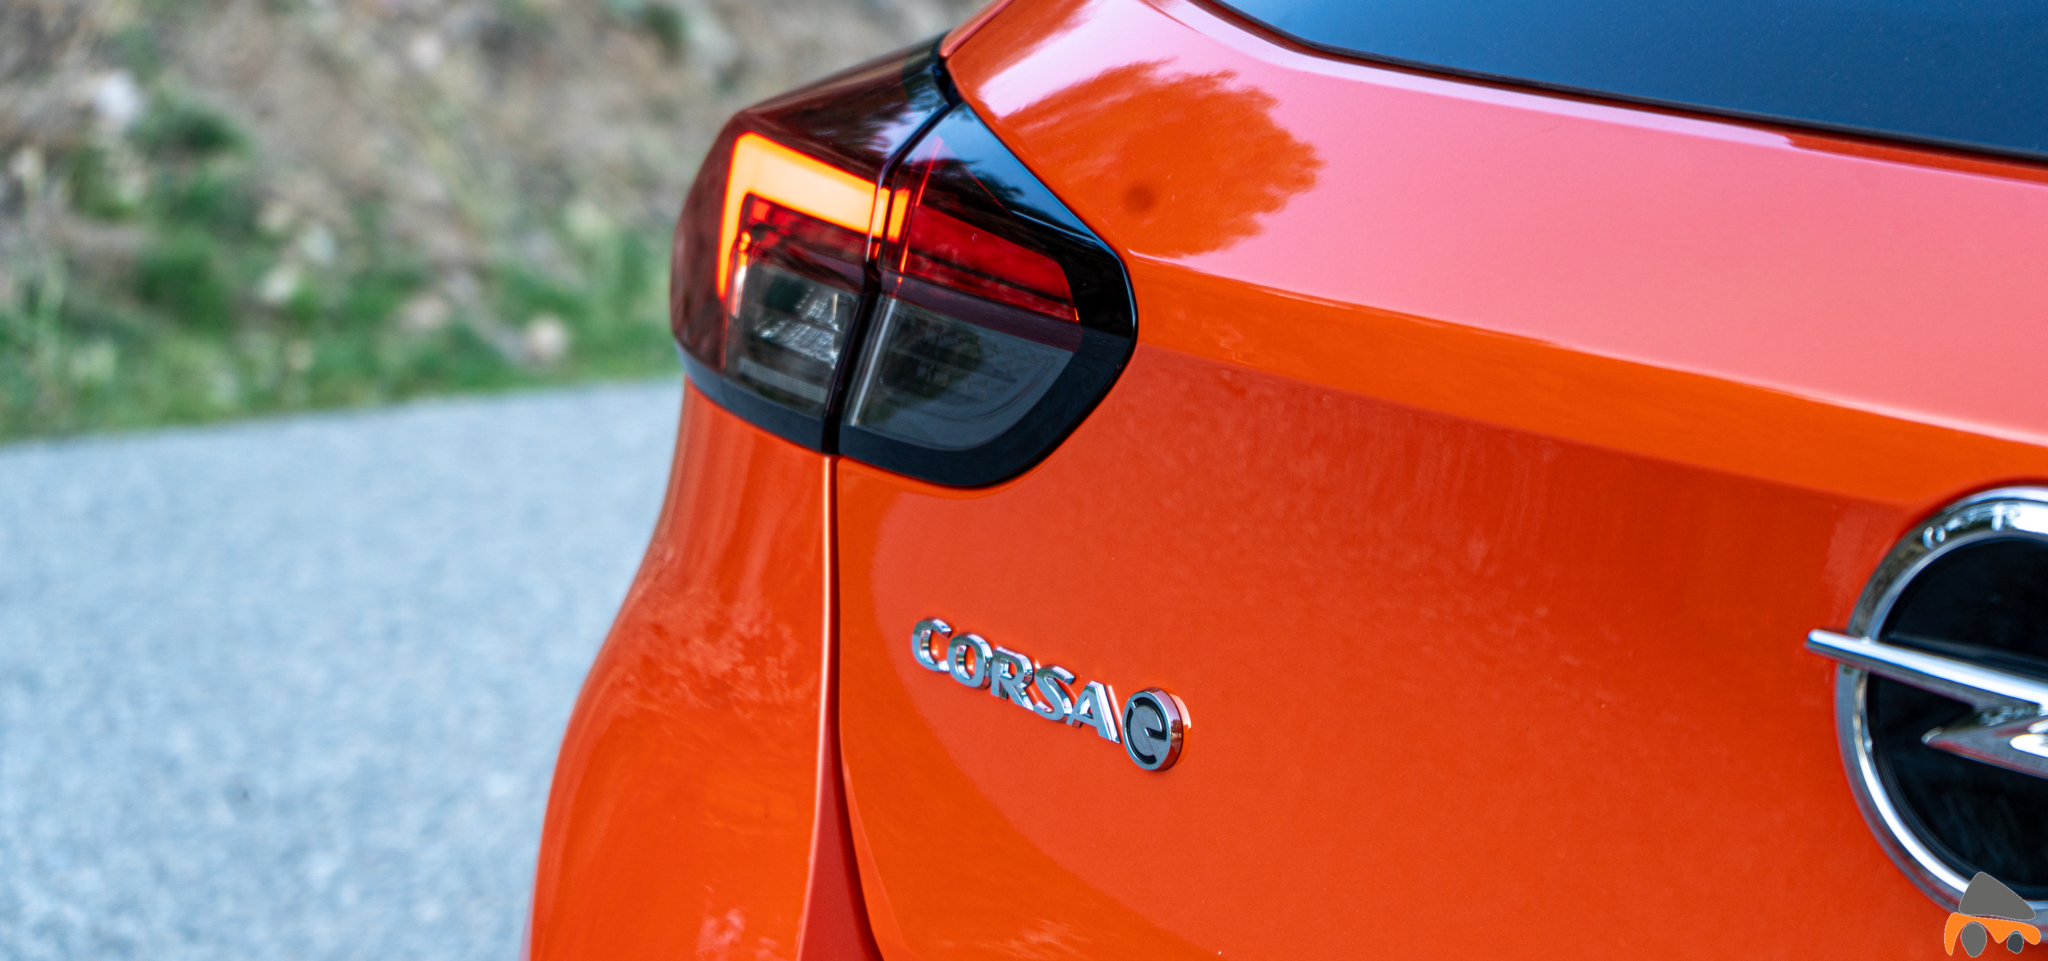 Logo corsa e Opel Corsa e - Prueba Opel Corsa-e 2020: El primer coche eléctrico de Opel tiene 136 CV y 280 km reales de autonomía